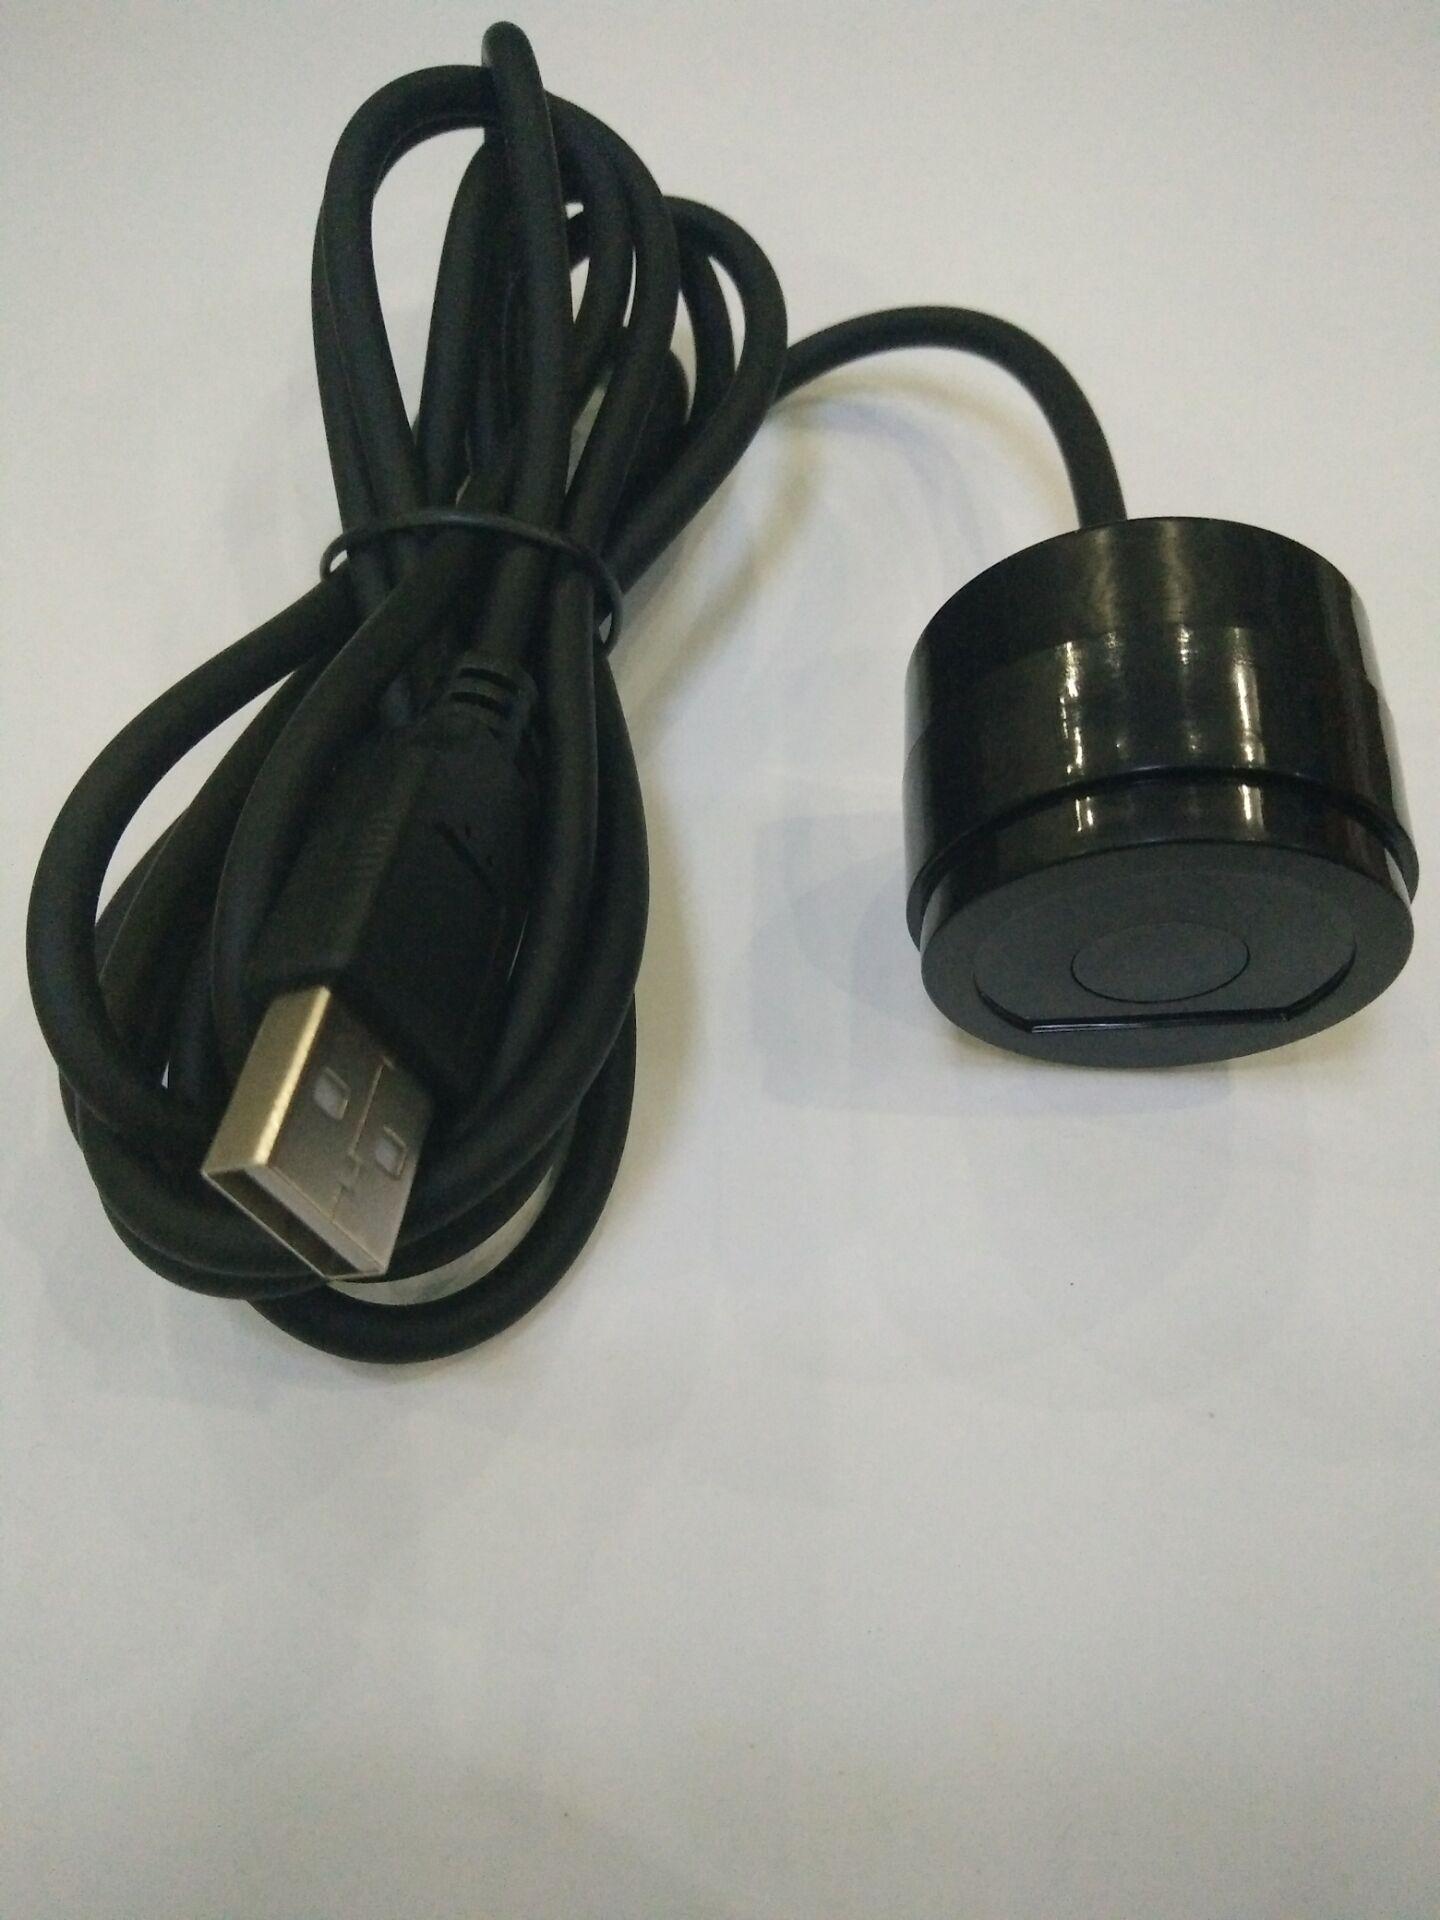 USB接口 IEC1107规约 电表吸附式光电头 近红外抄表光电头